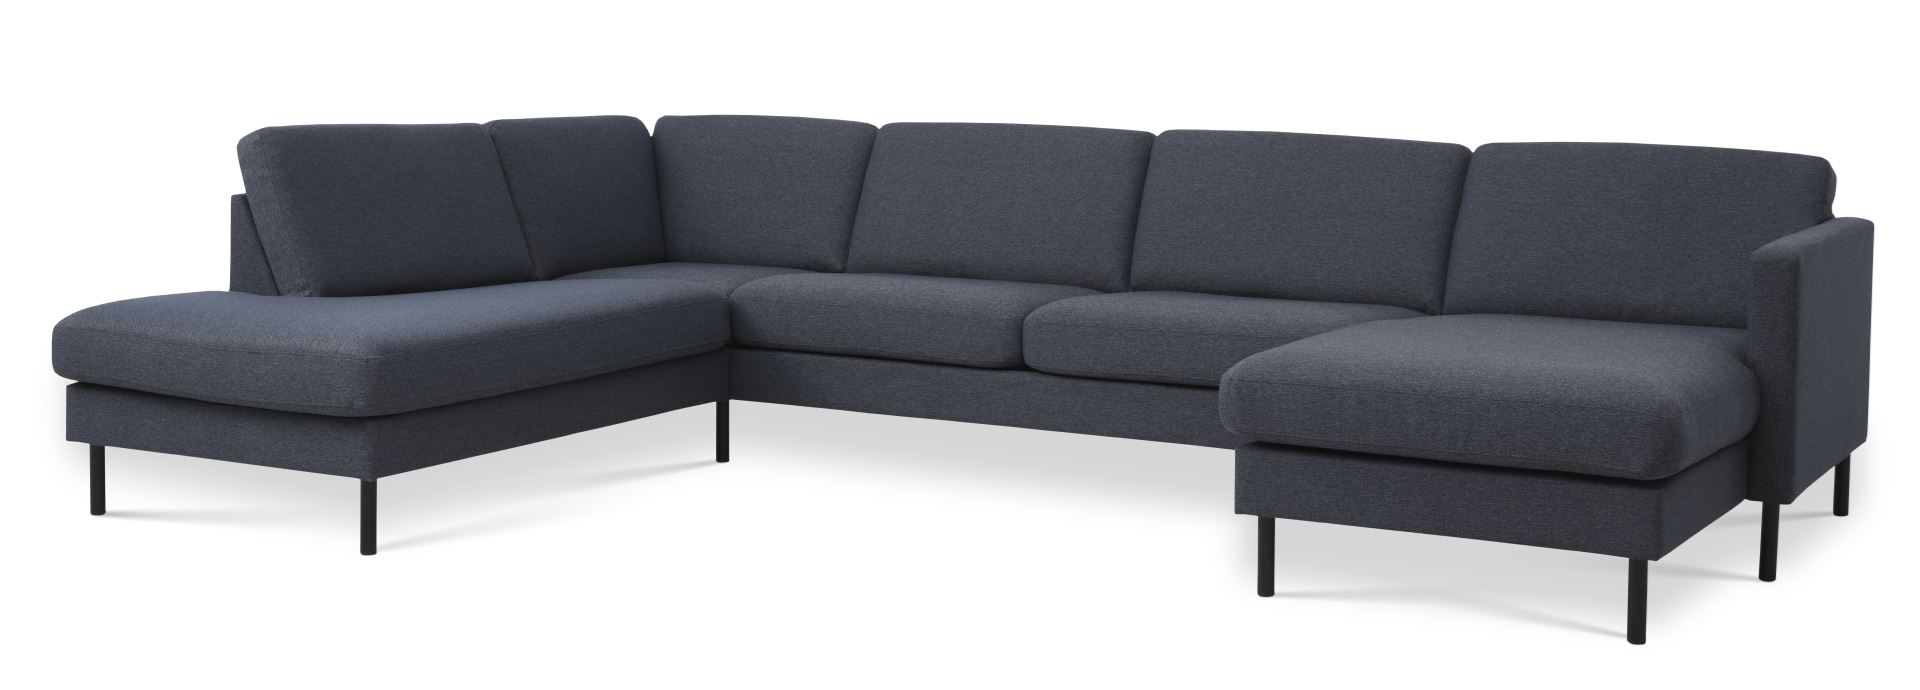 Ask sæt 54 U OE sofa, m. venstre chaiselong - navy blå polyester stof og sort metal